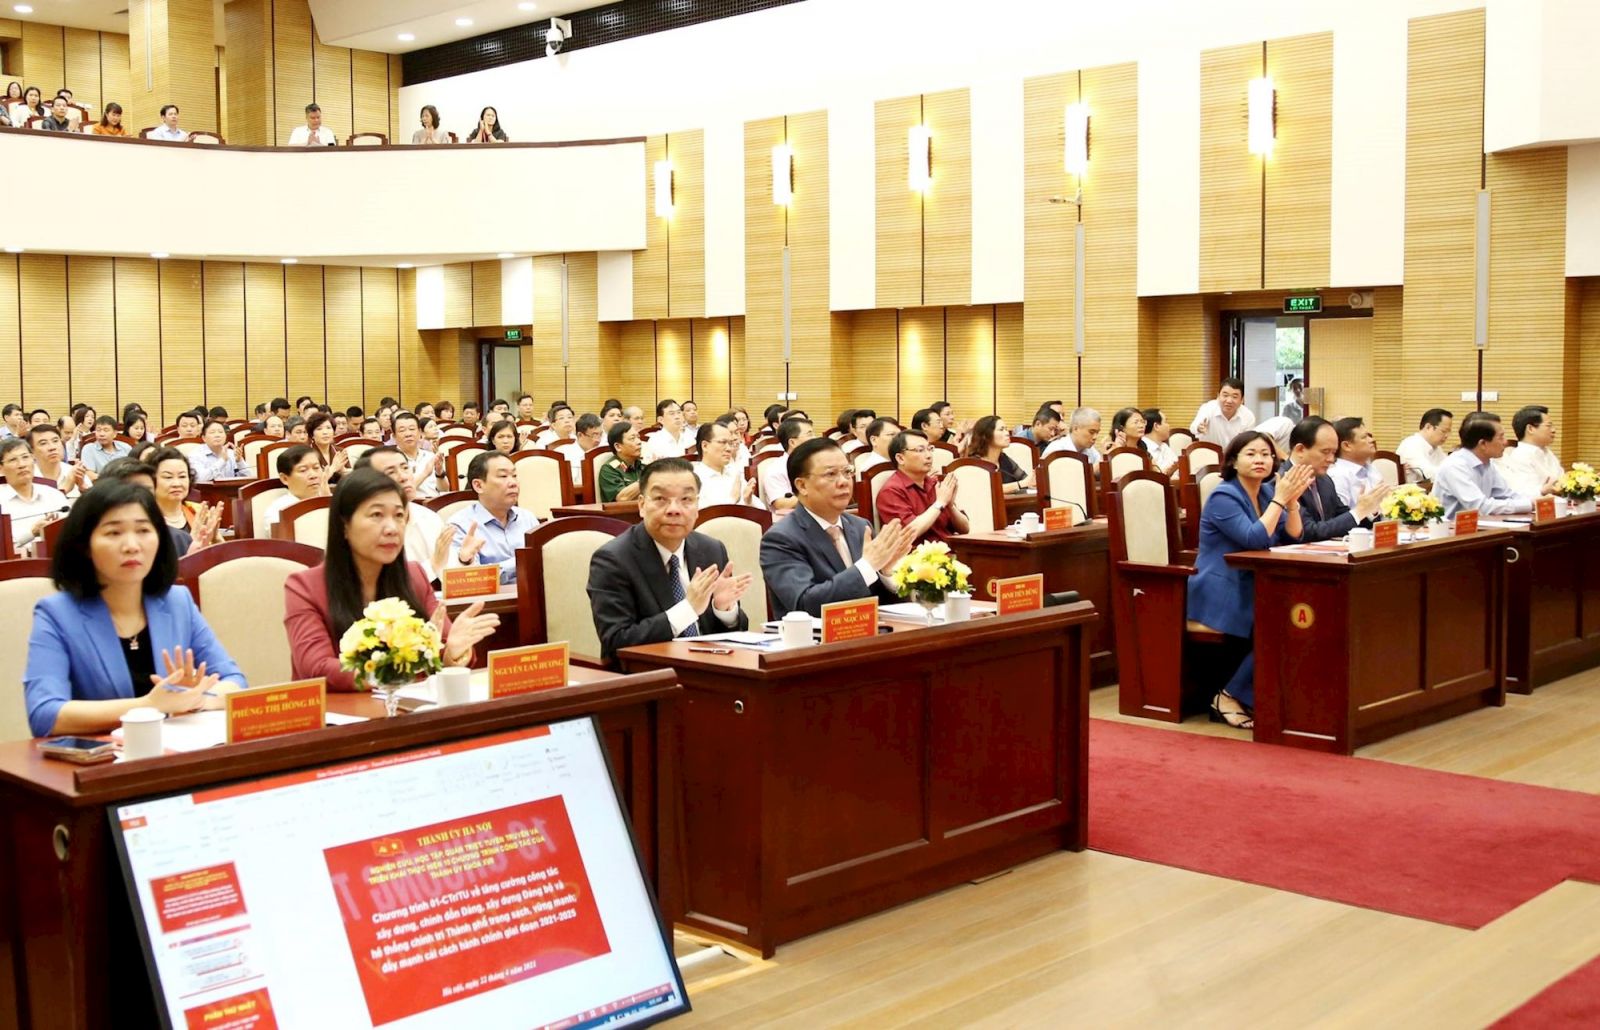  Đồng chí Đinh Tiến Dũng, Ủy viên Bộ Chính trị, Bí thư Thành ủy Hà Nội chủ trì hội nghị.